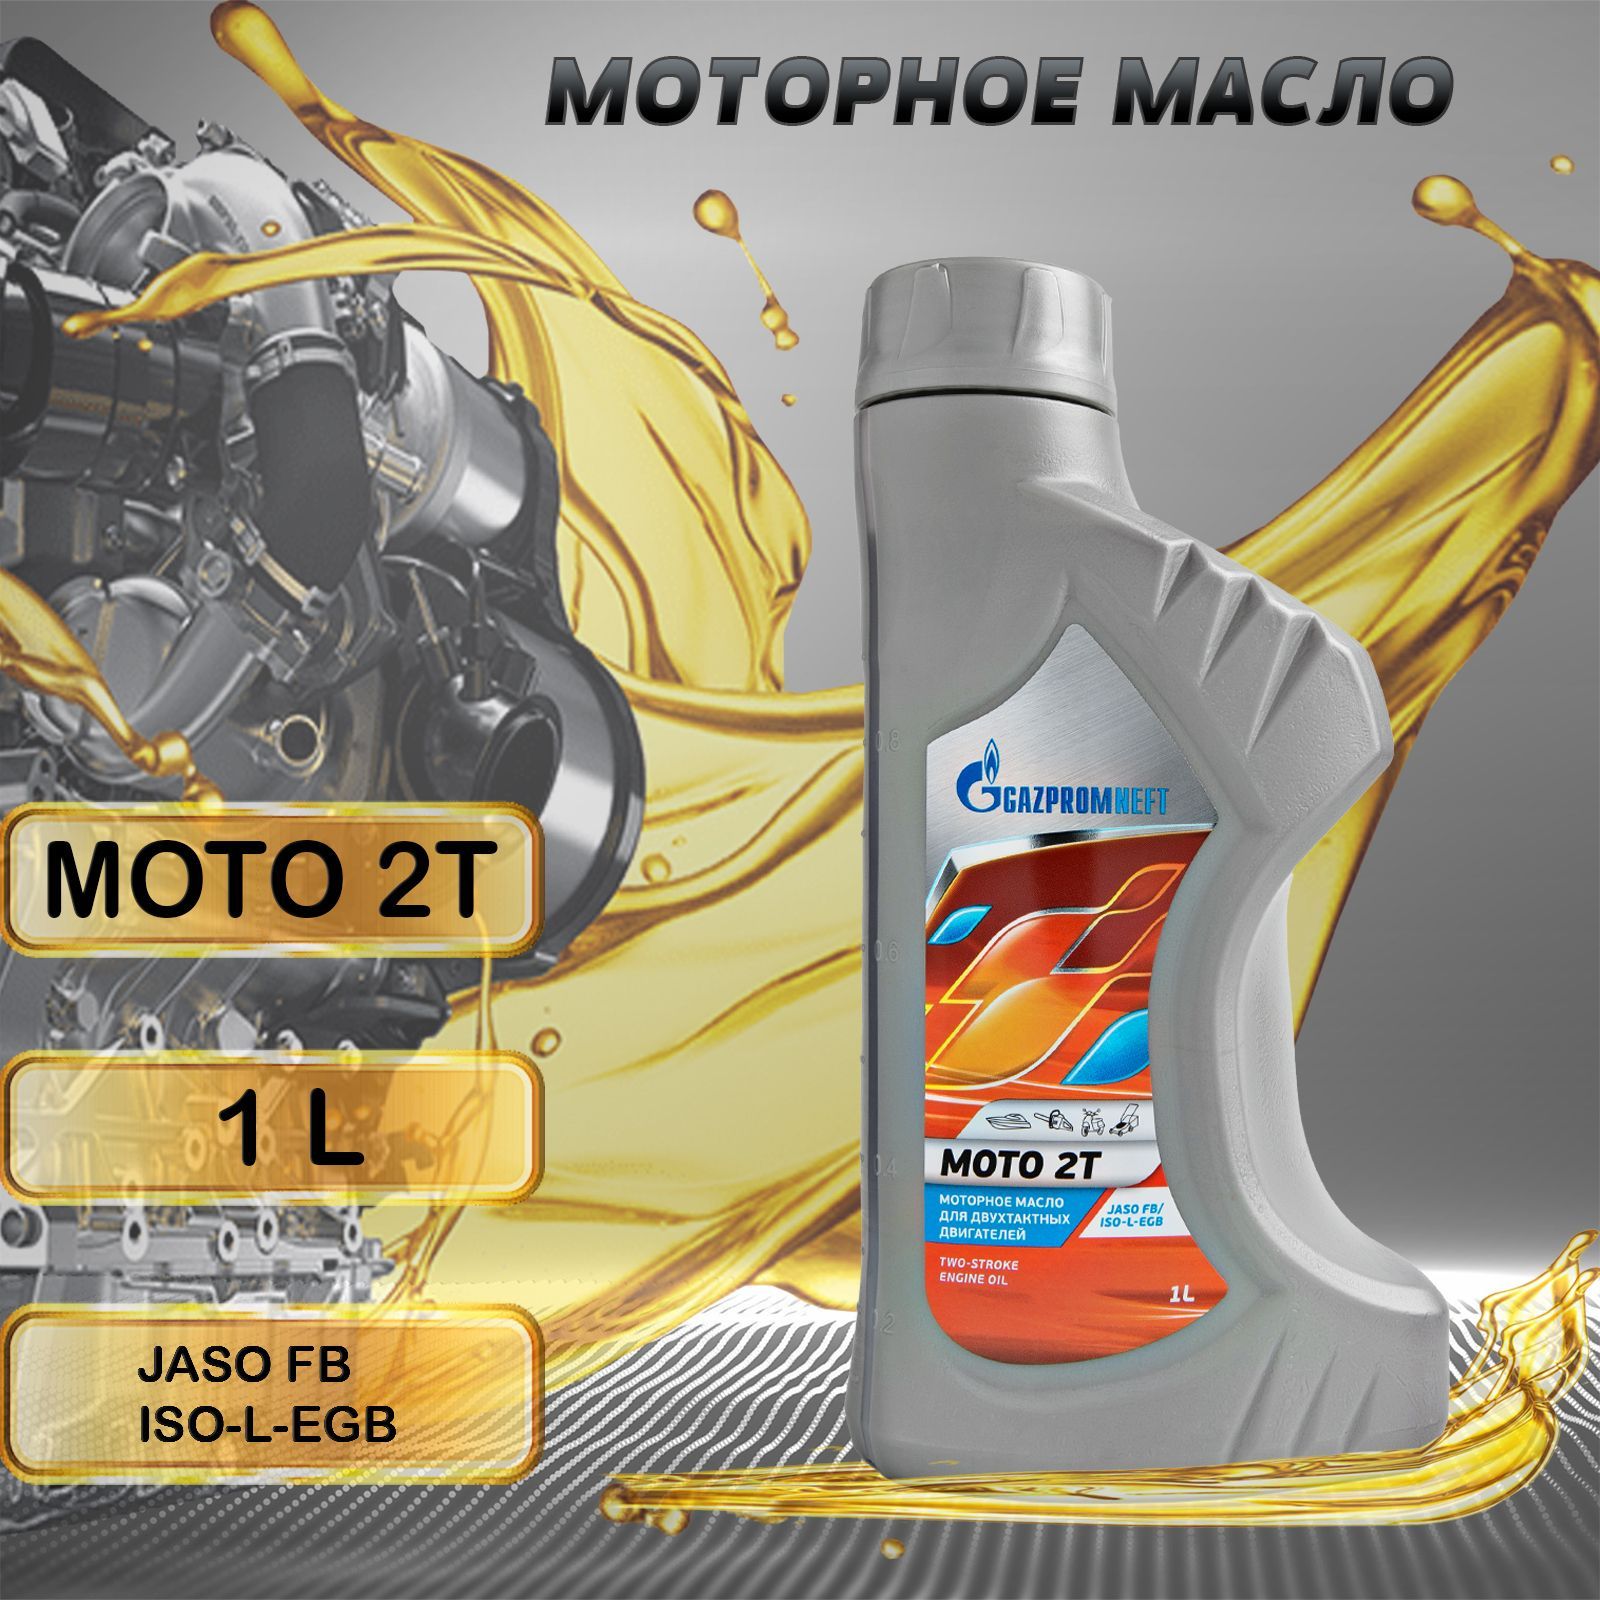 Масло газпромнефть 2т. Масло Gazpromneft Moto 2т (1л). Моторное масло FTL 2т минеральное 1 л. Масло в светофоре моторное Газпромнефть отзывы. Масло в редуктор Газпромнефть отзывы.